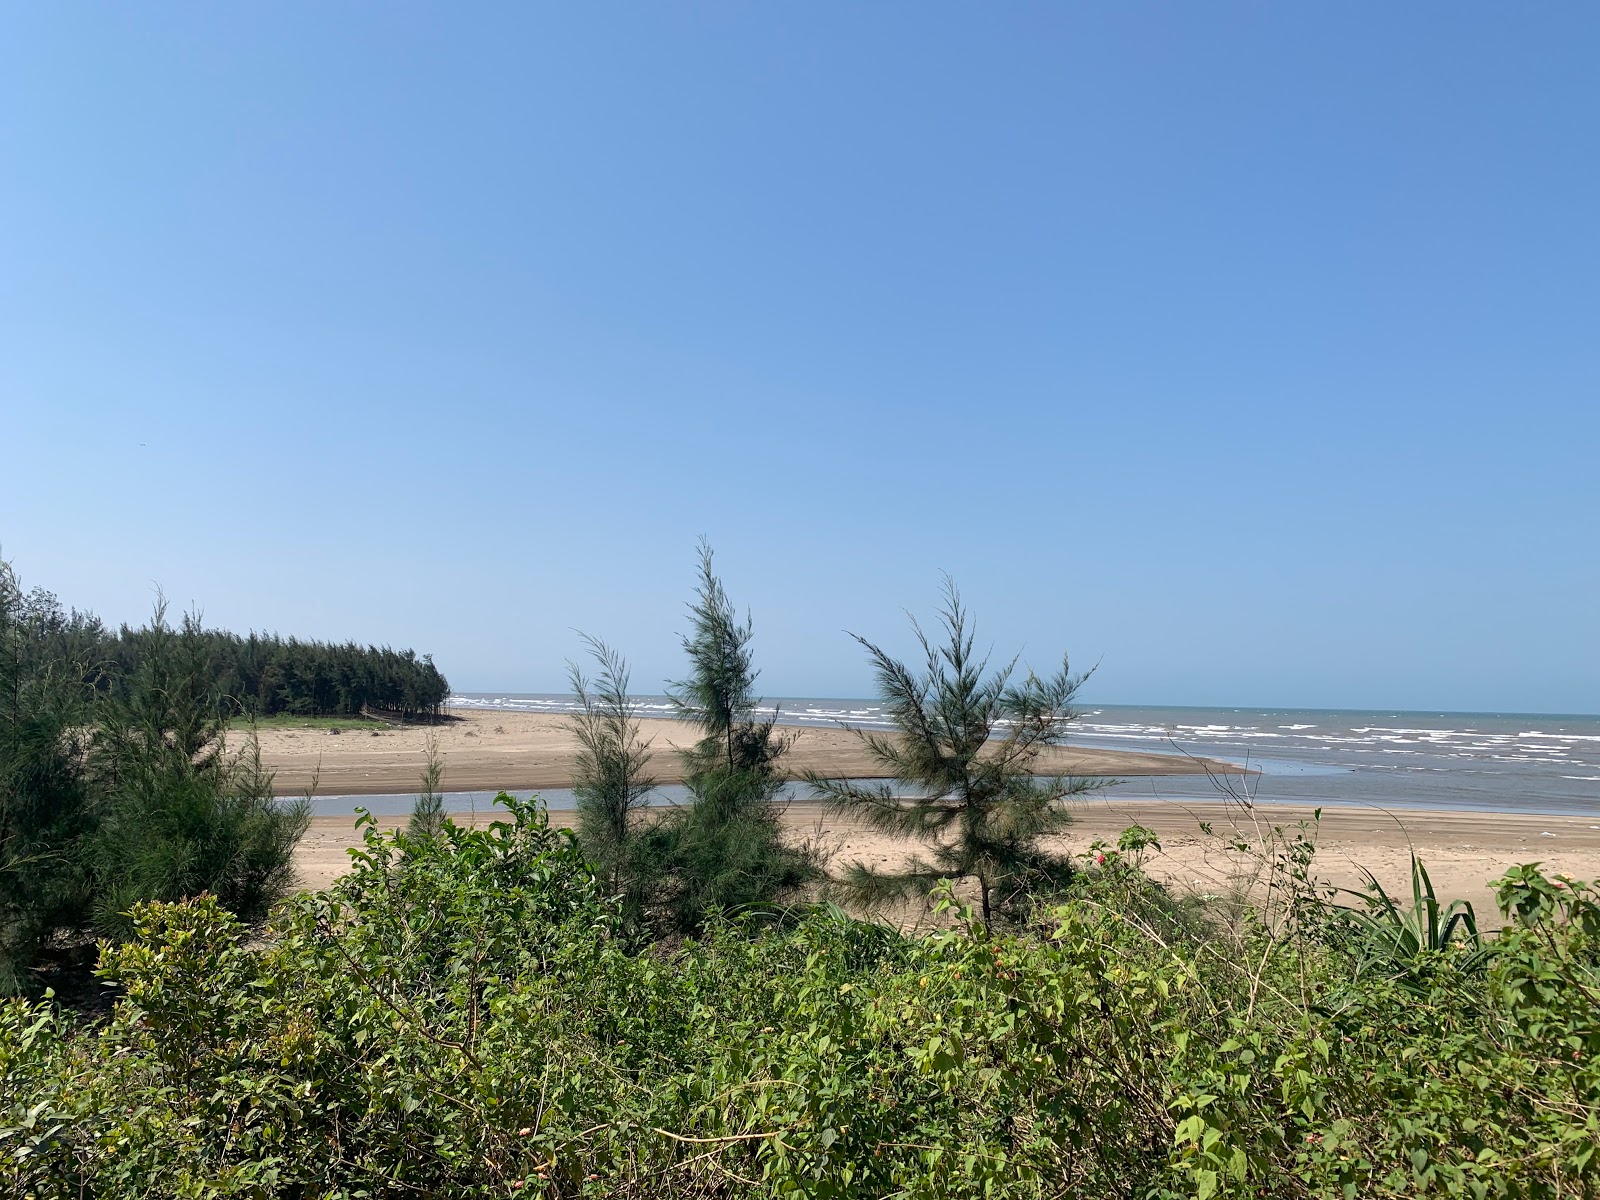 Zdjęcie Cua Hien Beach z powierzchnią jasny piasek